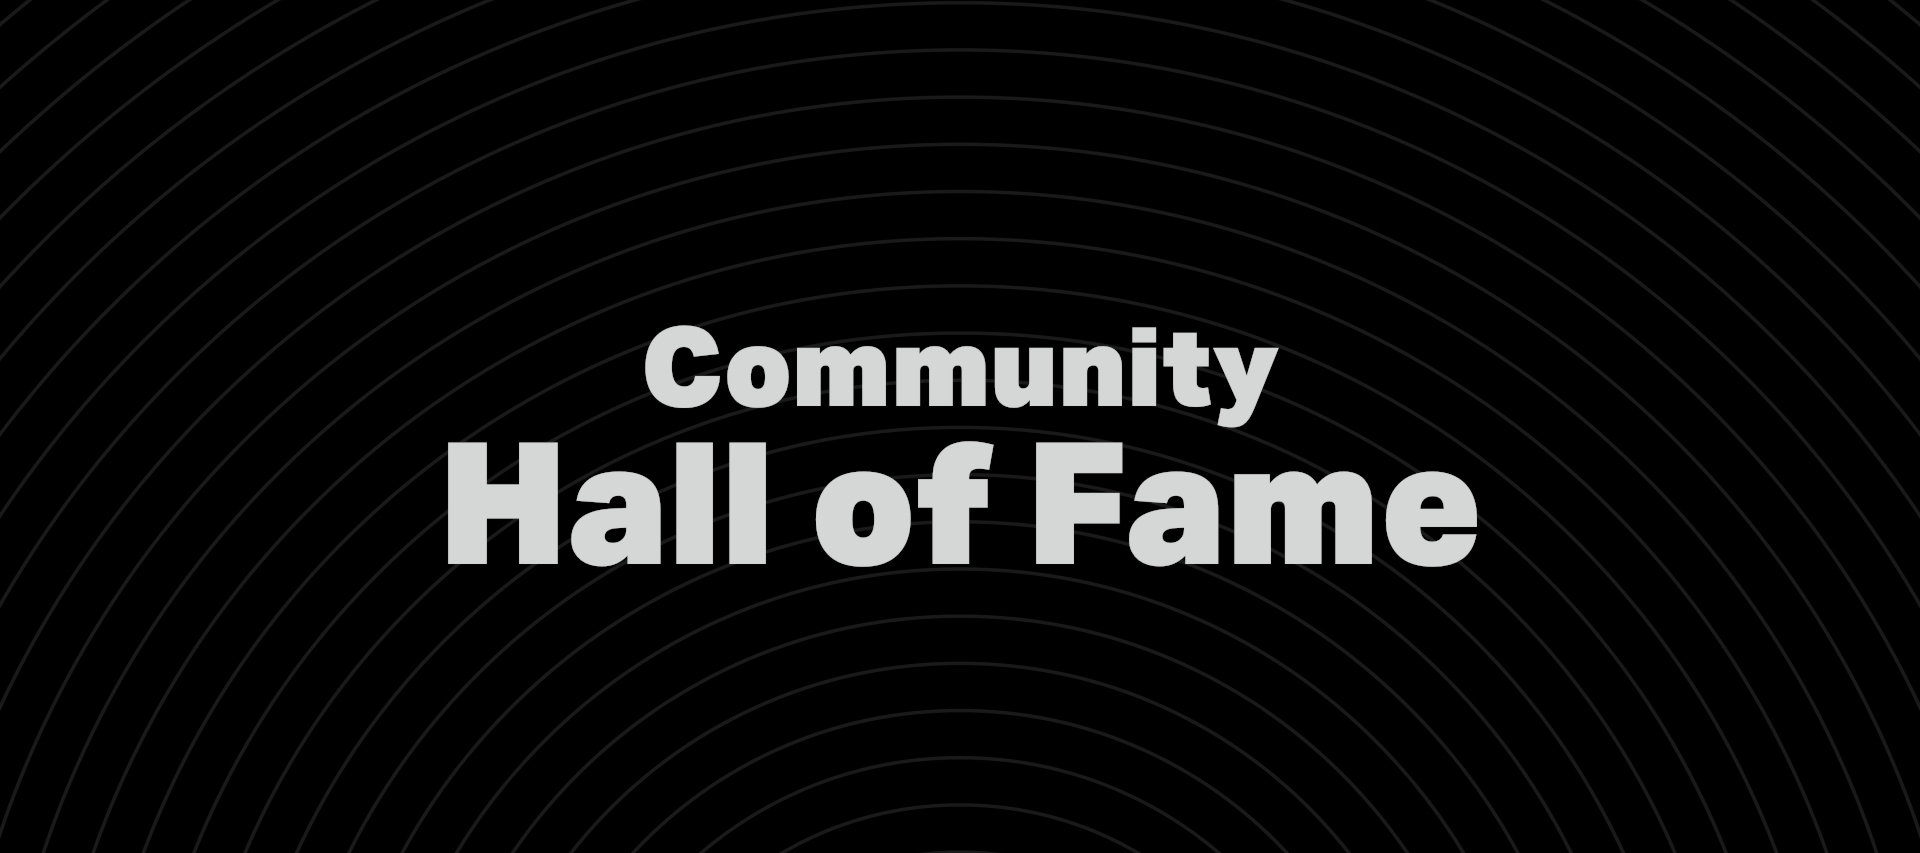 Hierbij introduceren we de Sonos Hall of Fame